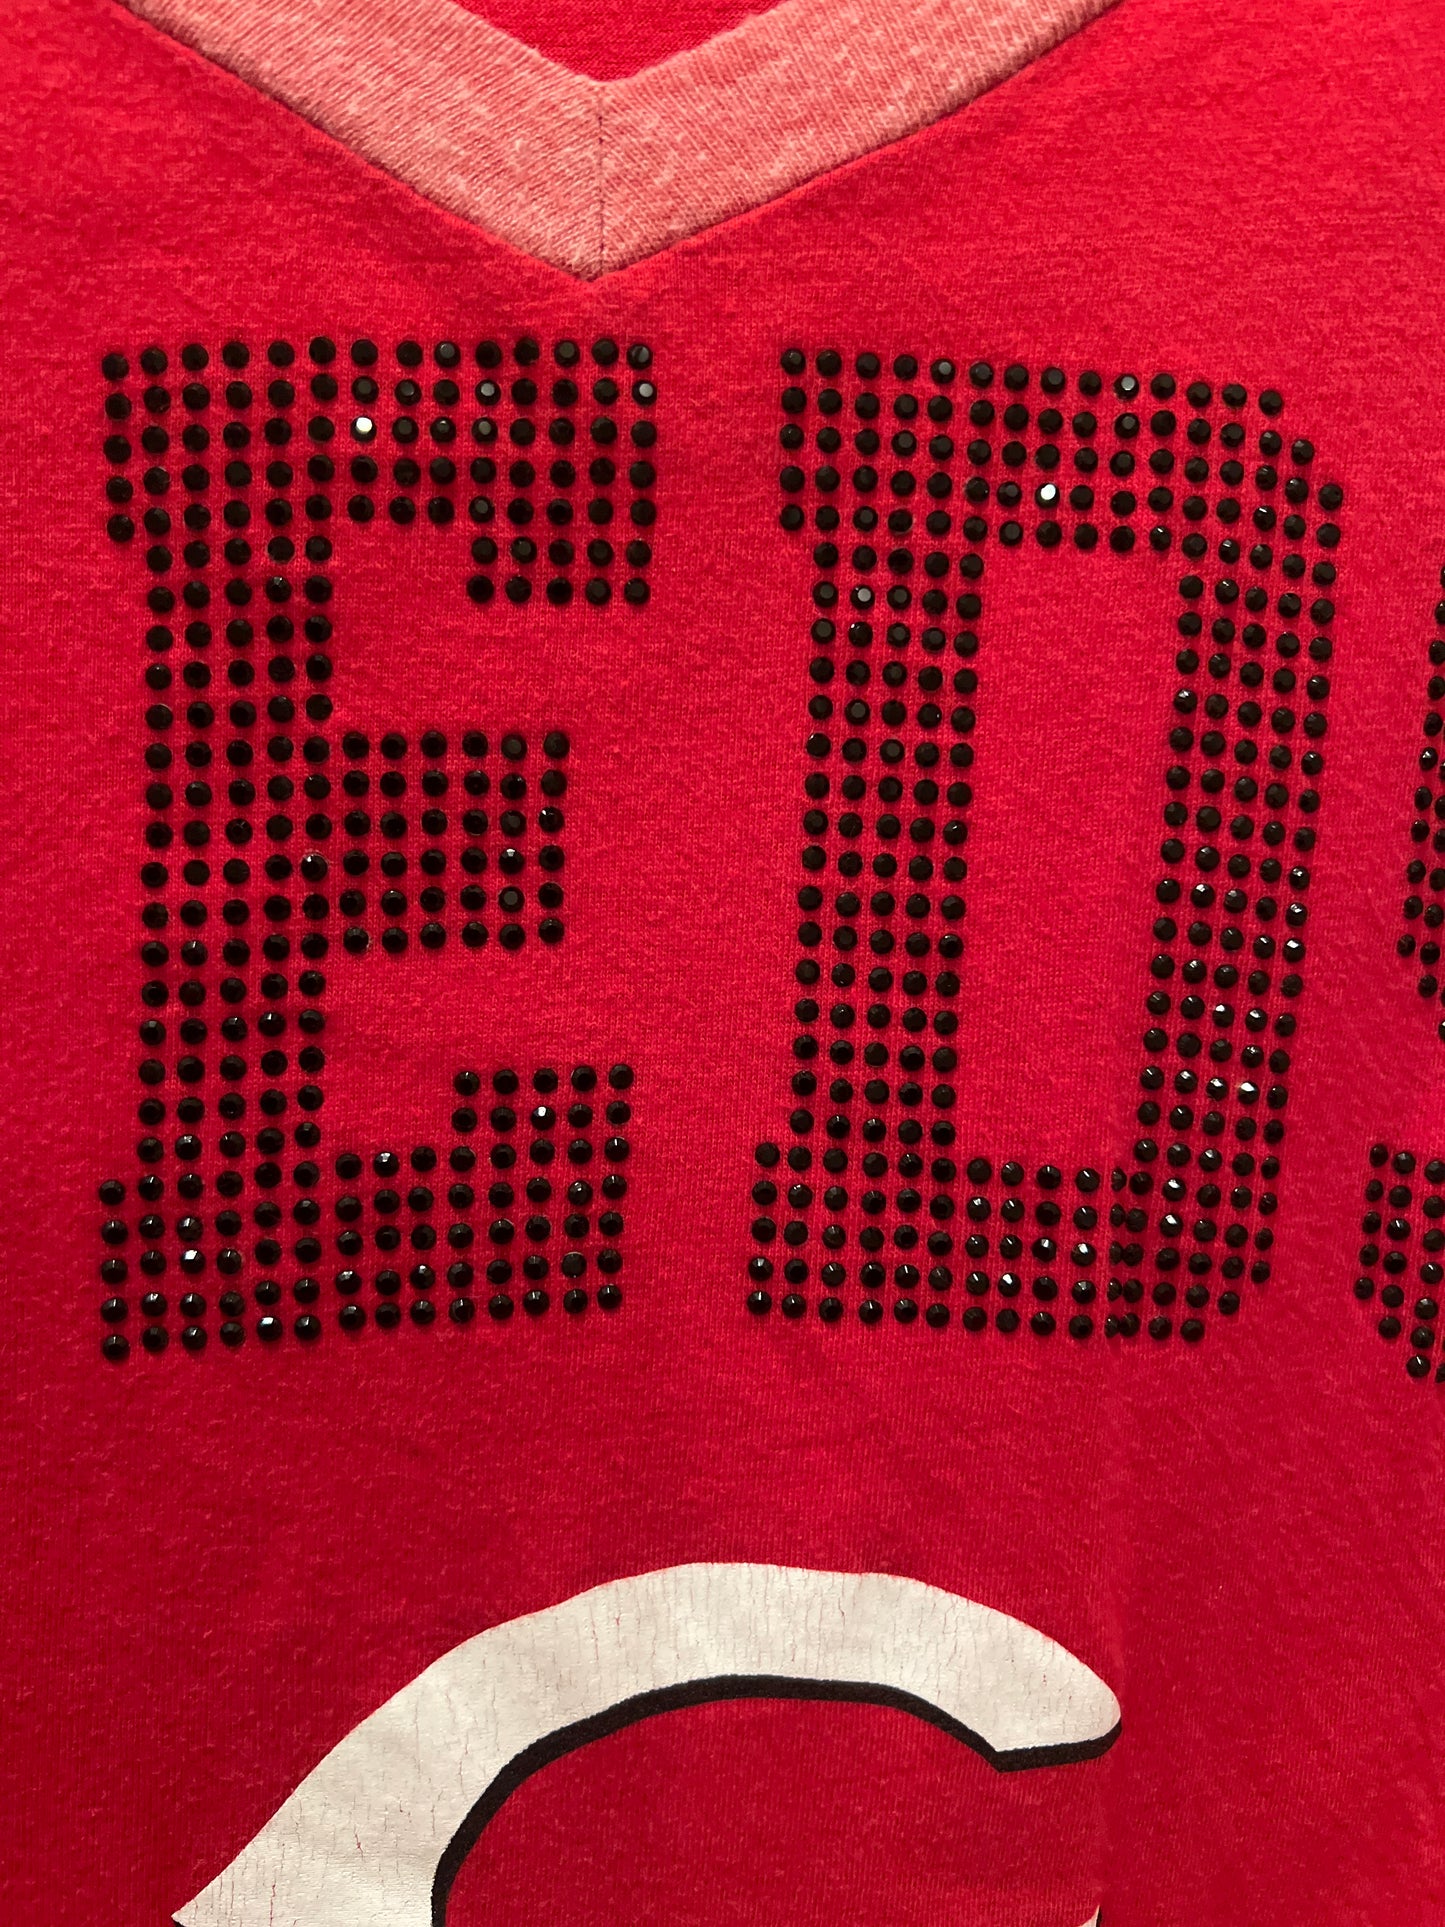 Women’s Cincinnati Reds 3/4 sleeve tshirt size S